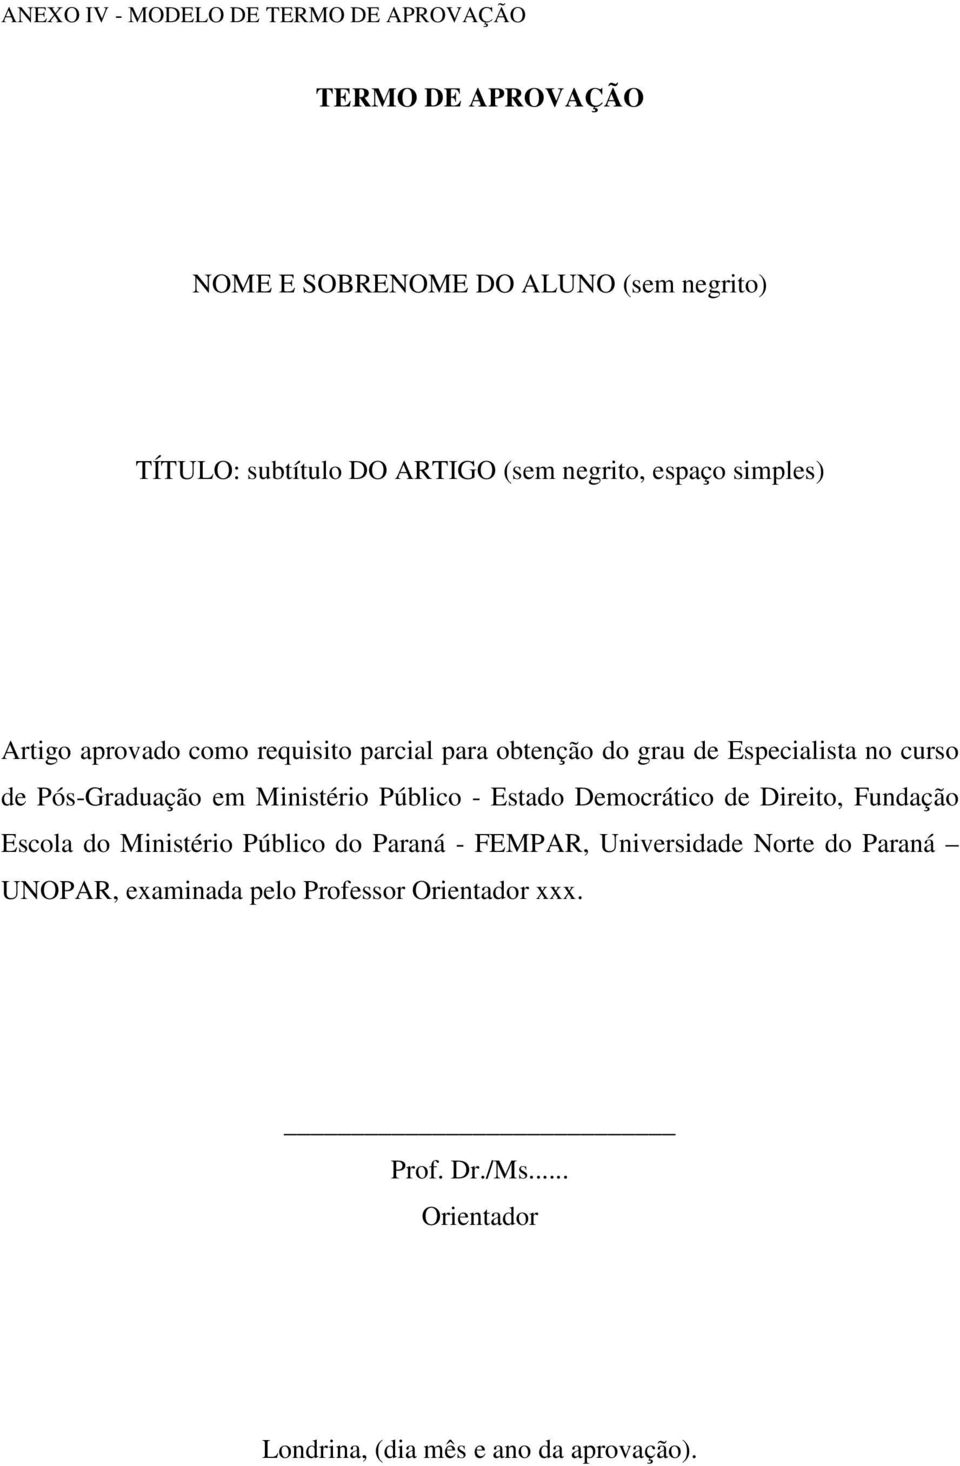 Pós-Graduação em Ministério Público - Estado Democrático de Direito, Fundação Escola do Ministério Público do Paraná - FEMPAR,